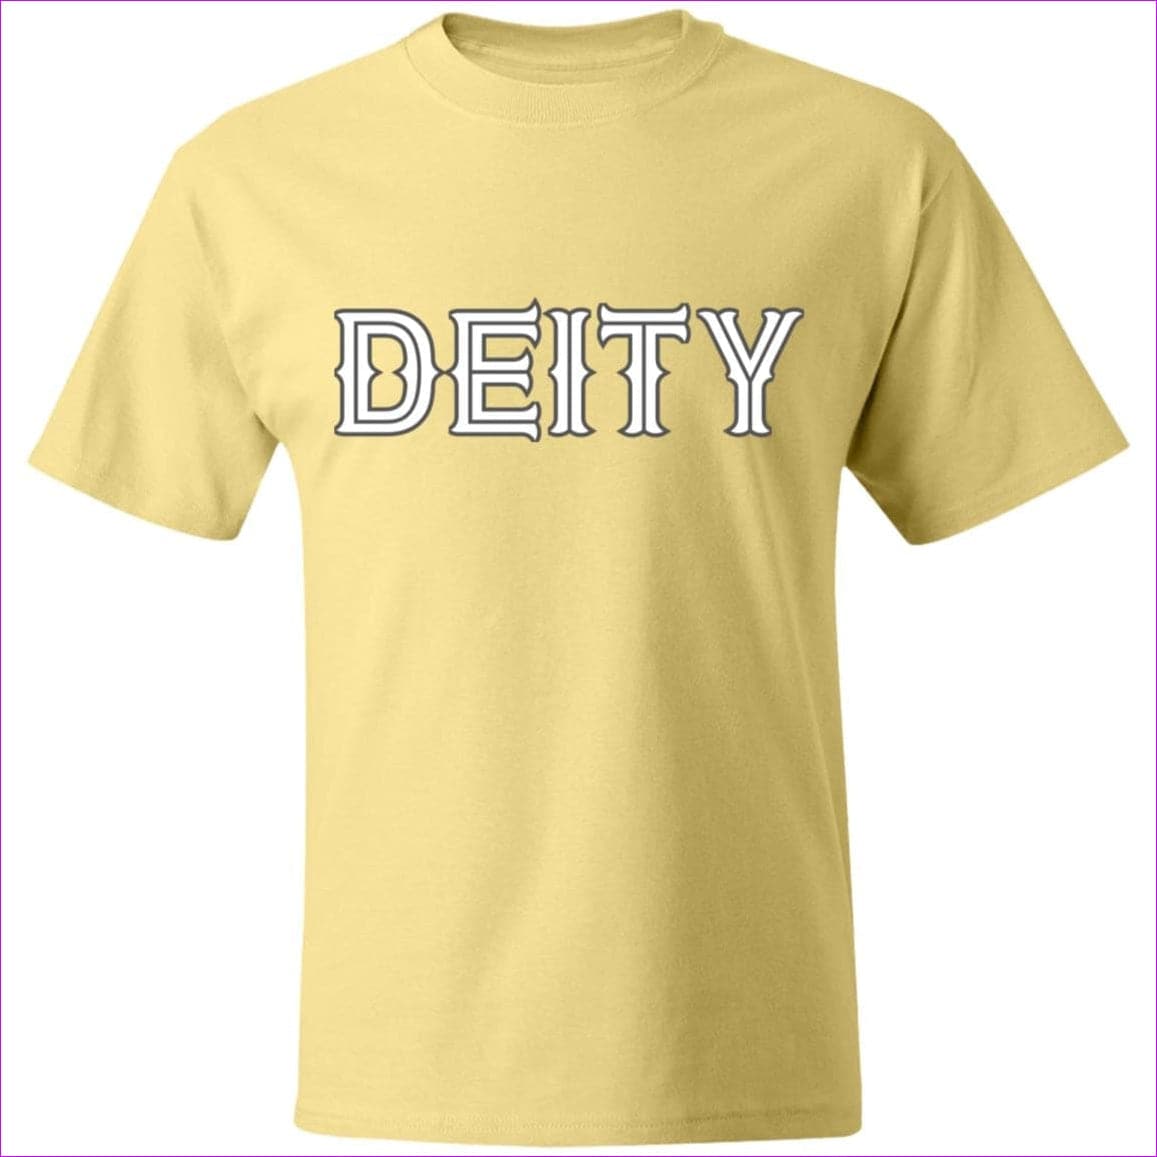 Banana - Deity Beefy T-Shirt - Mens T-Shirts at TFC&H Co.